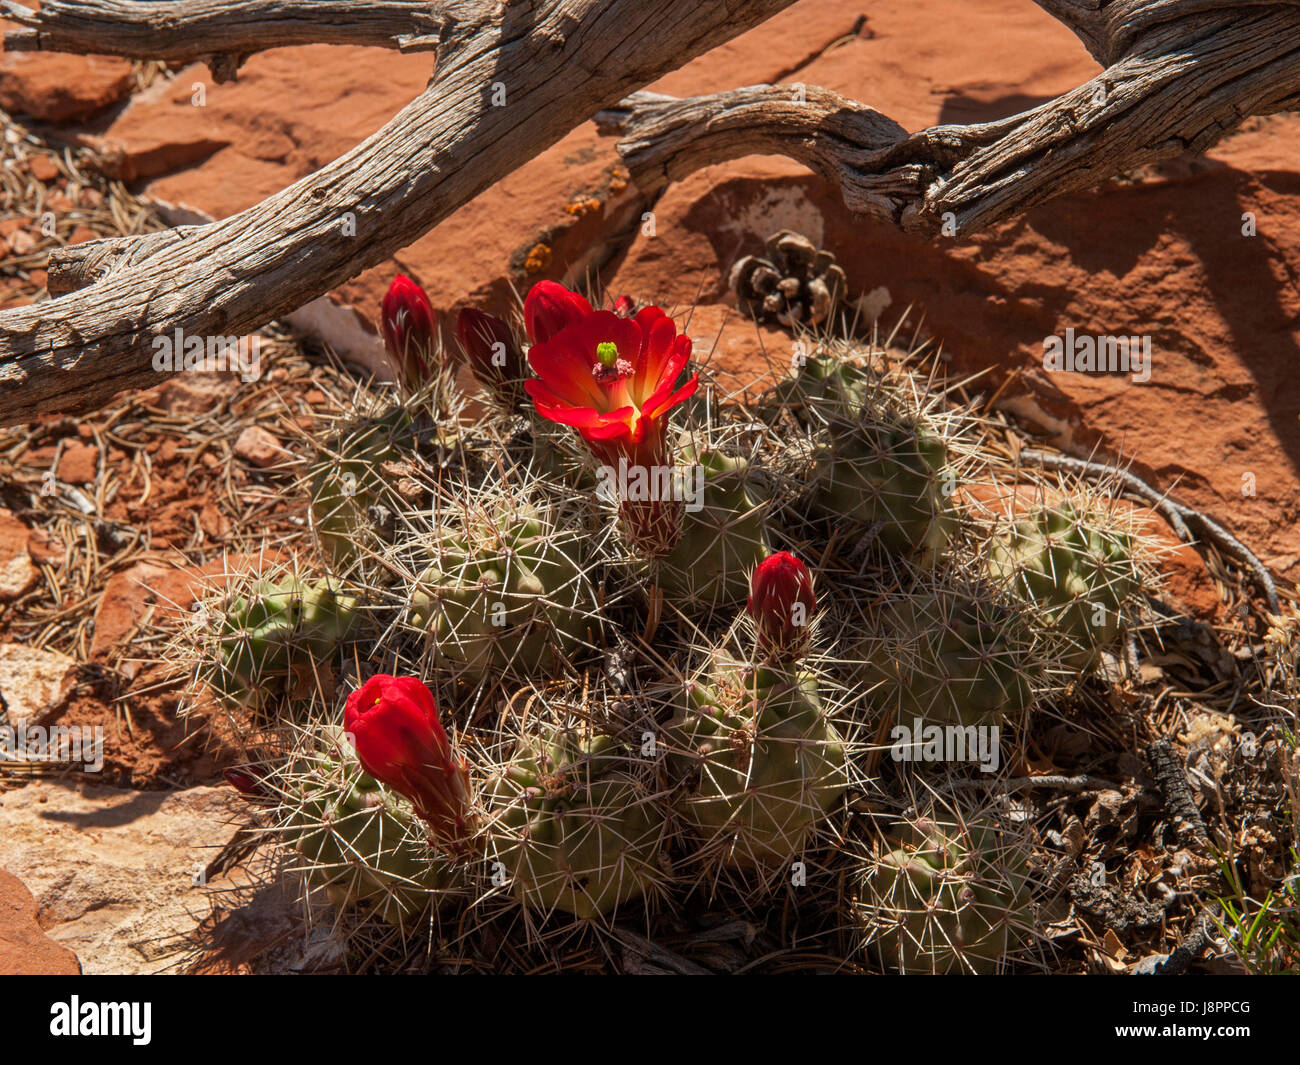 Claret Cup (Echinocereus triglochidiatus) cactus in bloom Stock Photo